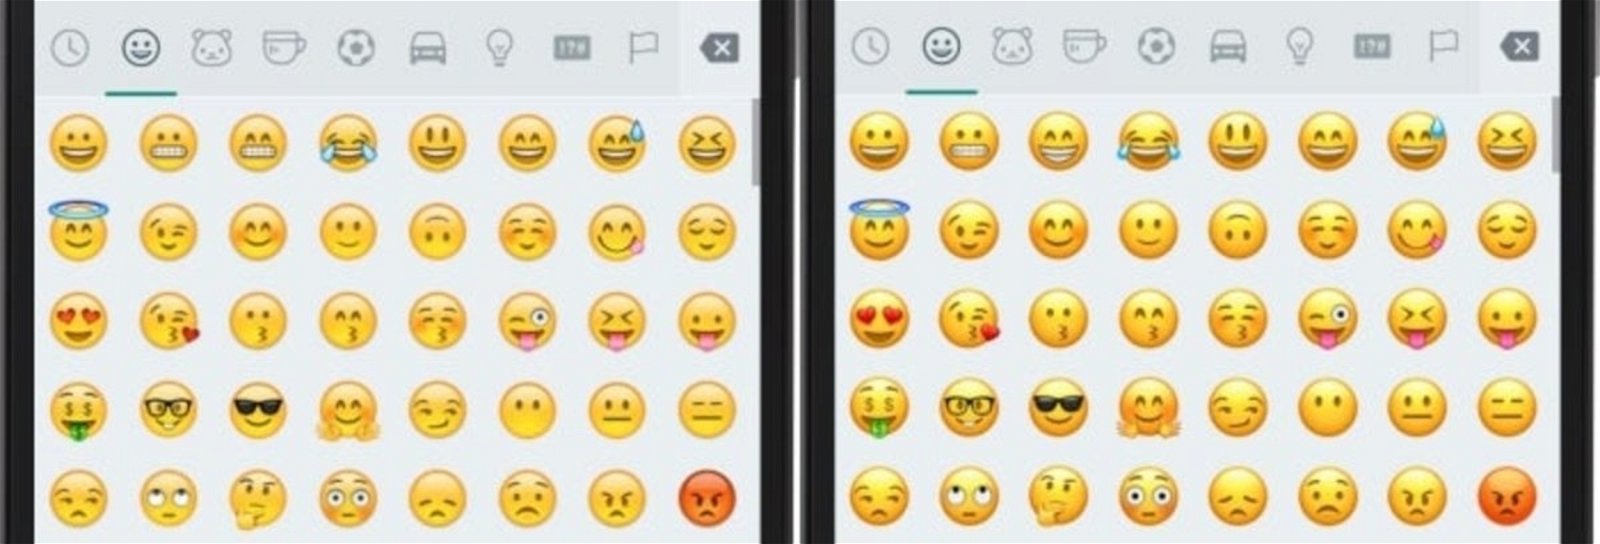 Nuevos emojis de iOS 10 para WhatsApp en Android